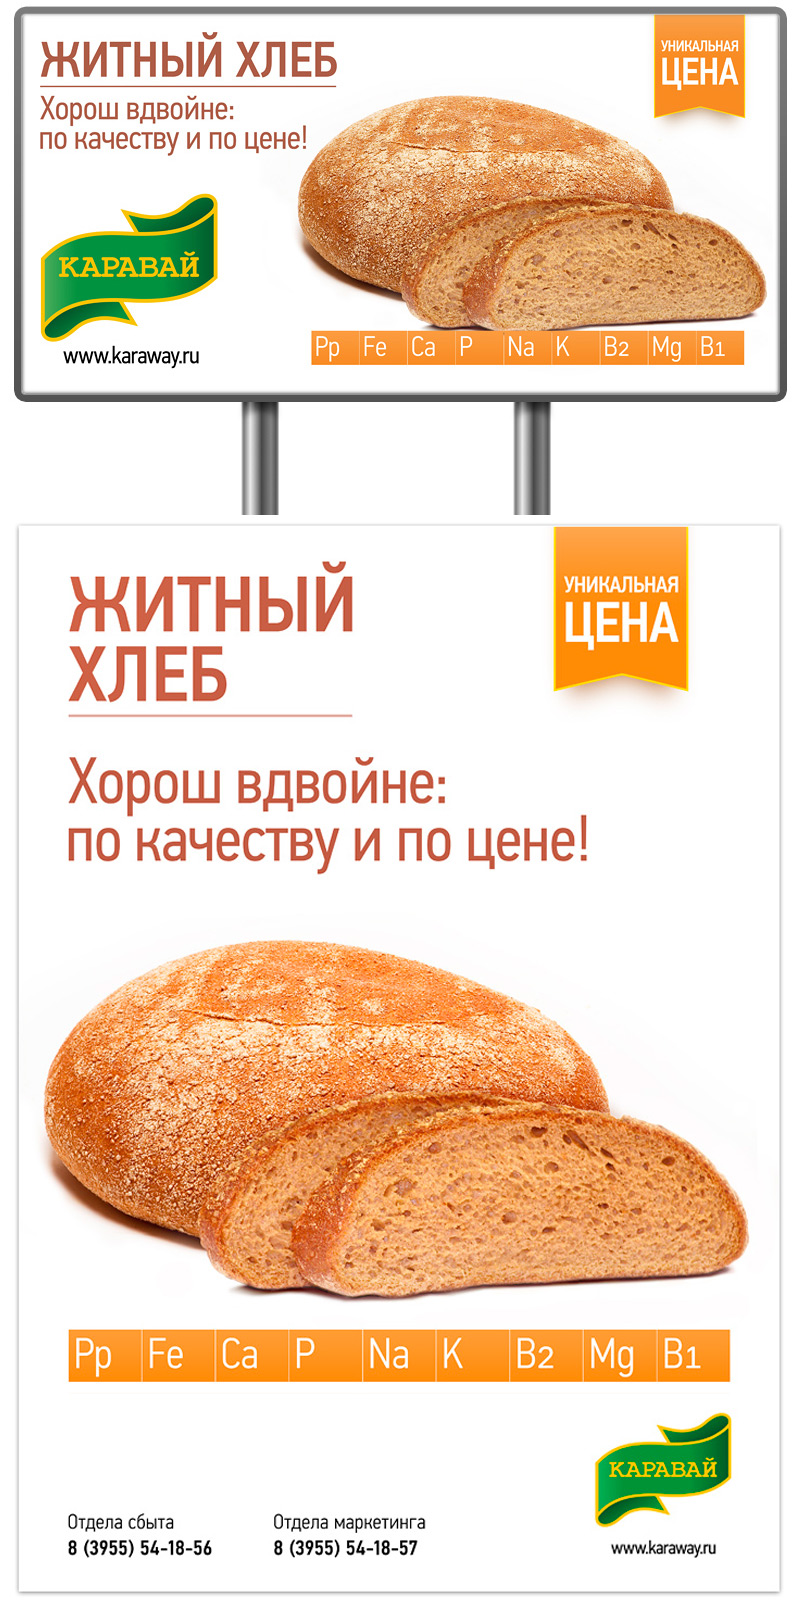 Создание стиля оформления материалов рекламной кампании Житного хлеба